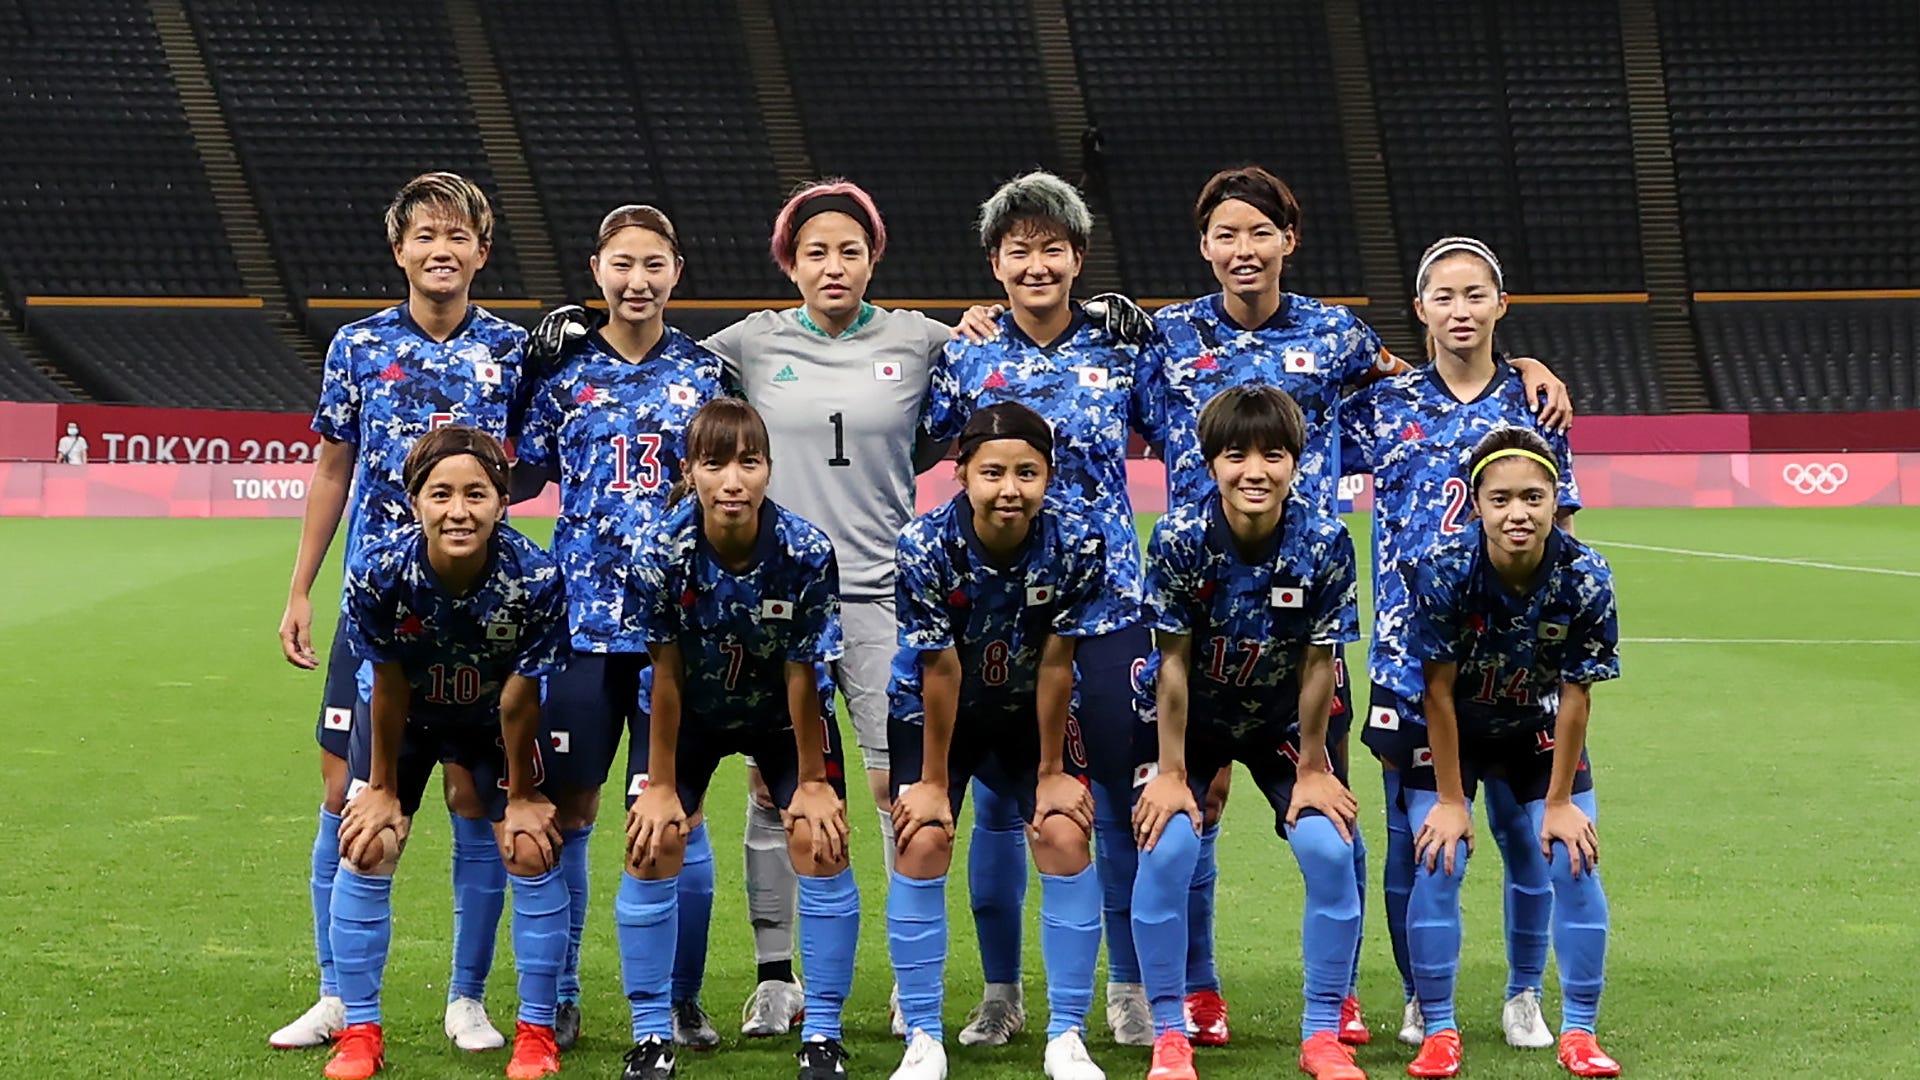 スタメン速報 なでしこジャパンvsイギリス女子代表 東京五輪女子サッカー Goal Com 日本